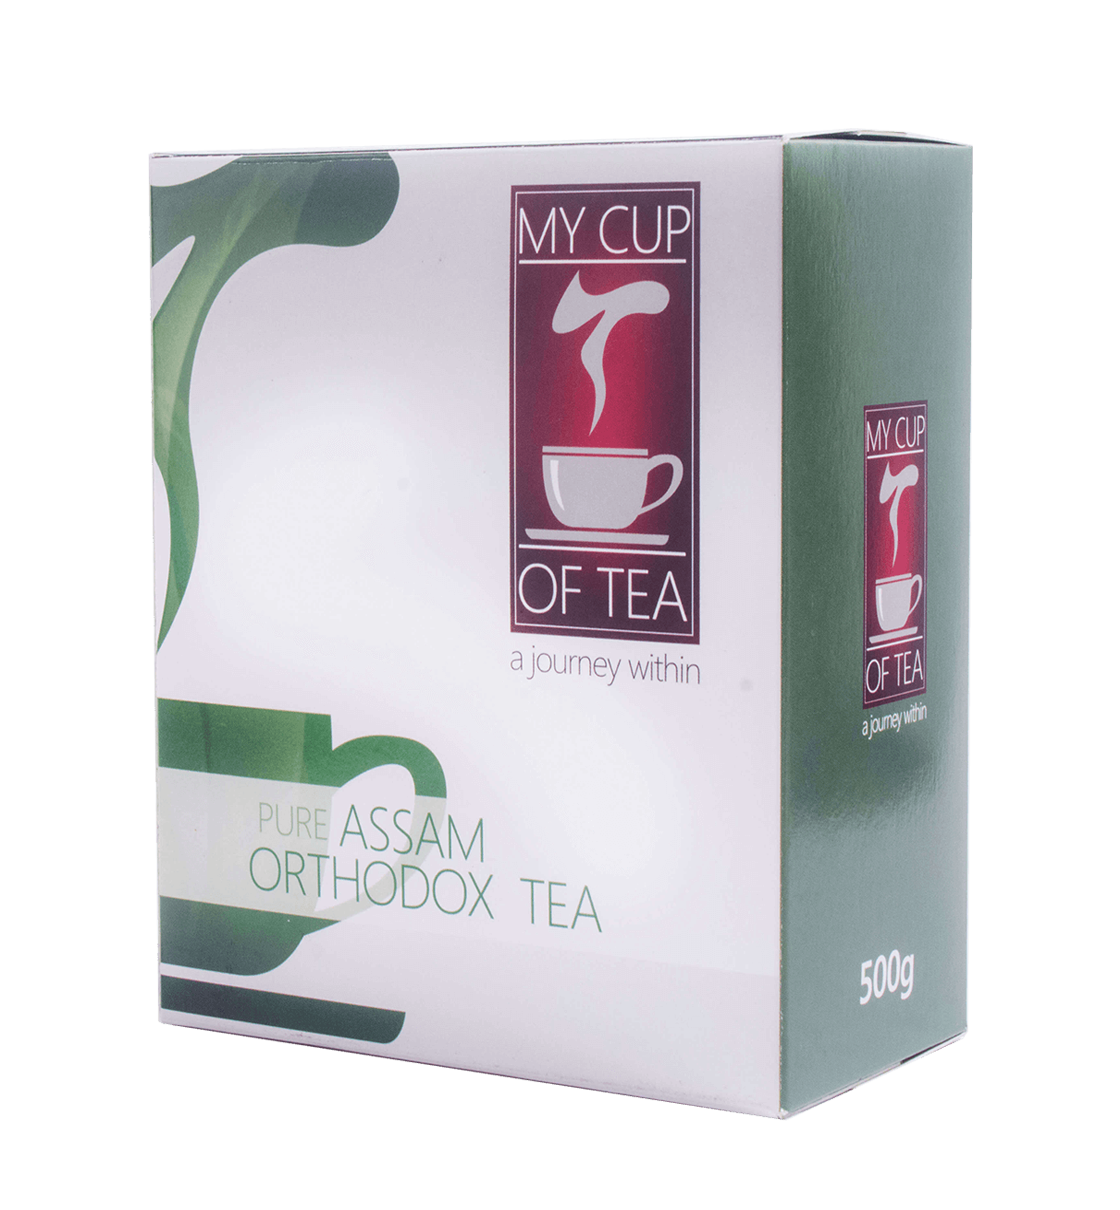 Pure Assam Orthodox Tea